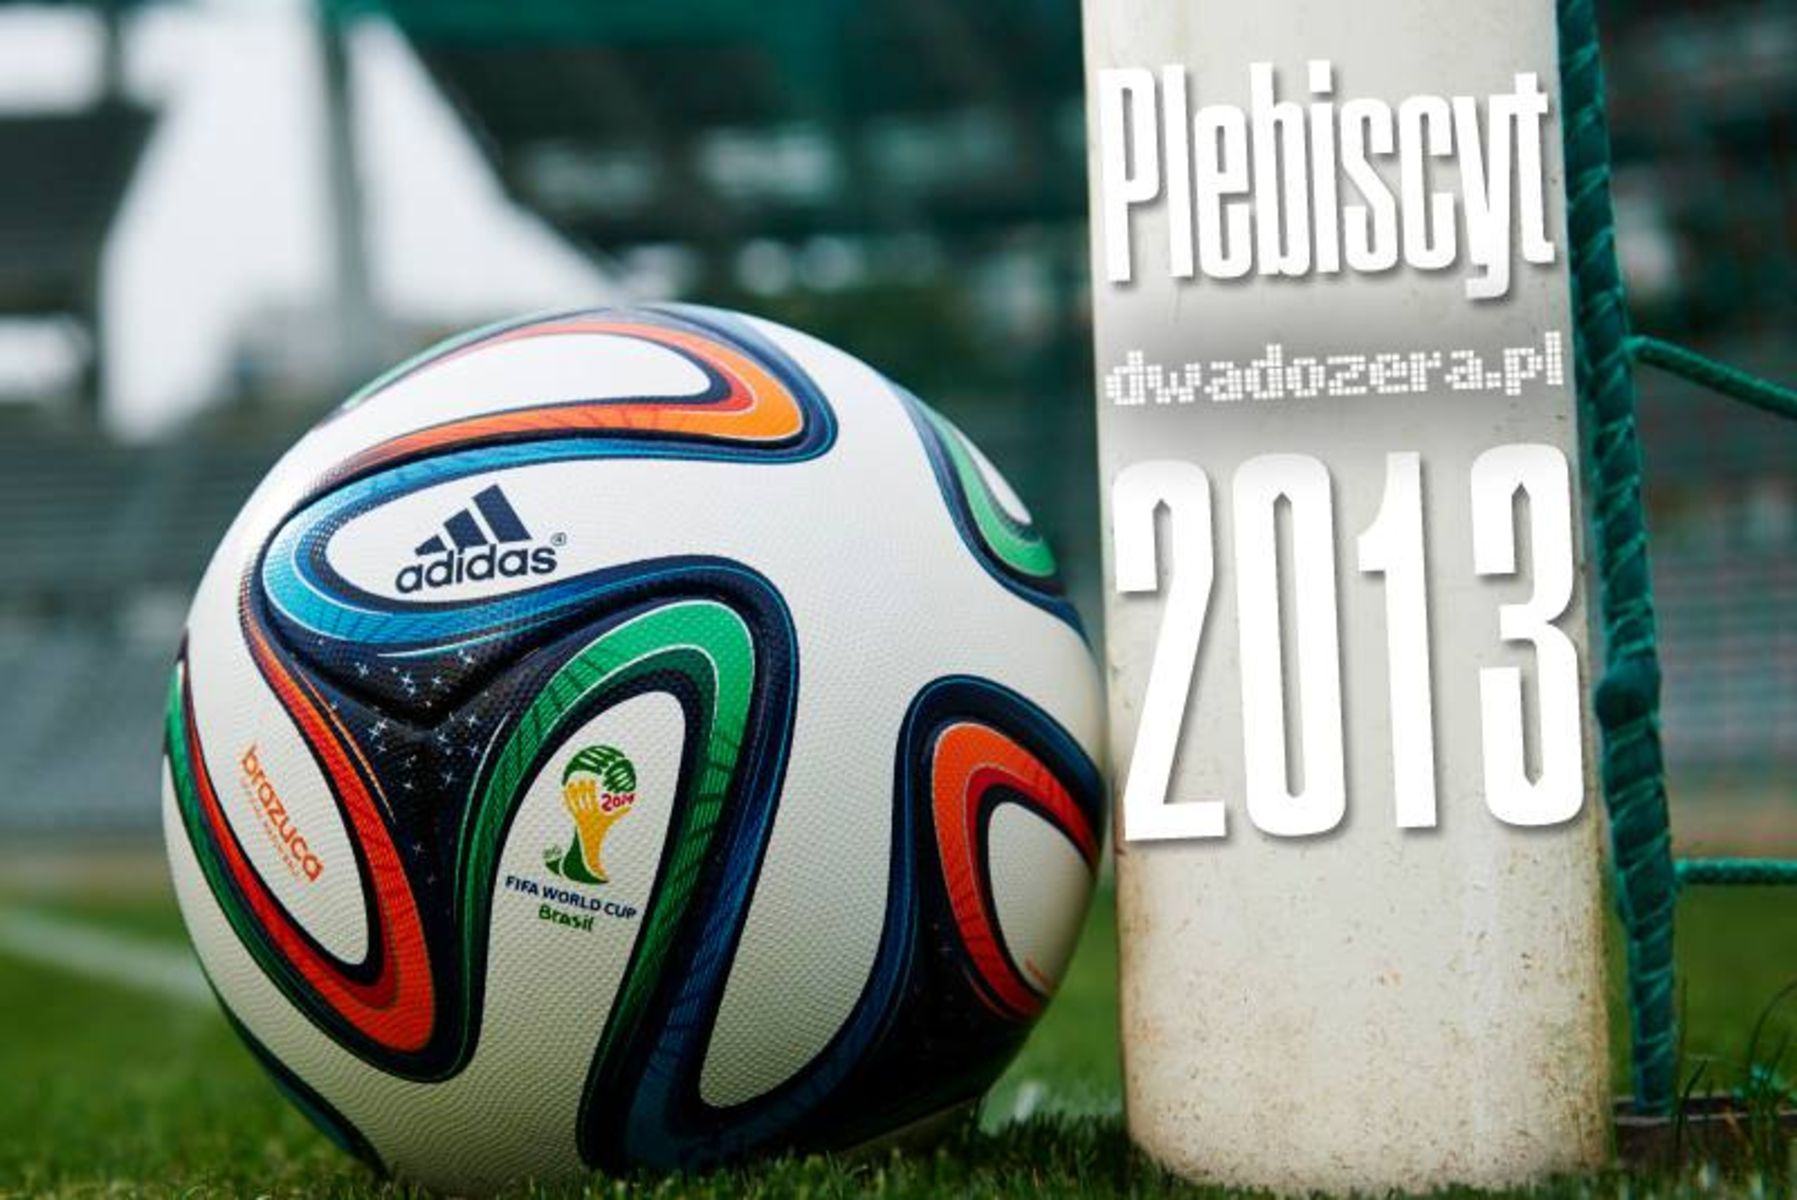 W tym roku po raz pierwszy Plebiscyt dwadozera.pl zakończy uroczysta Piłkarska Gala. Rys. Paju; Fot. adidas